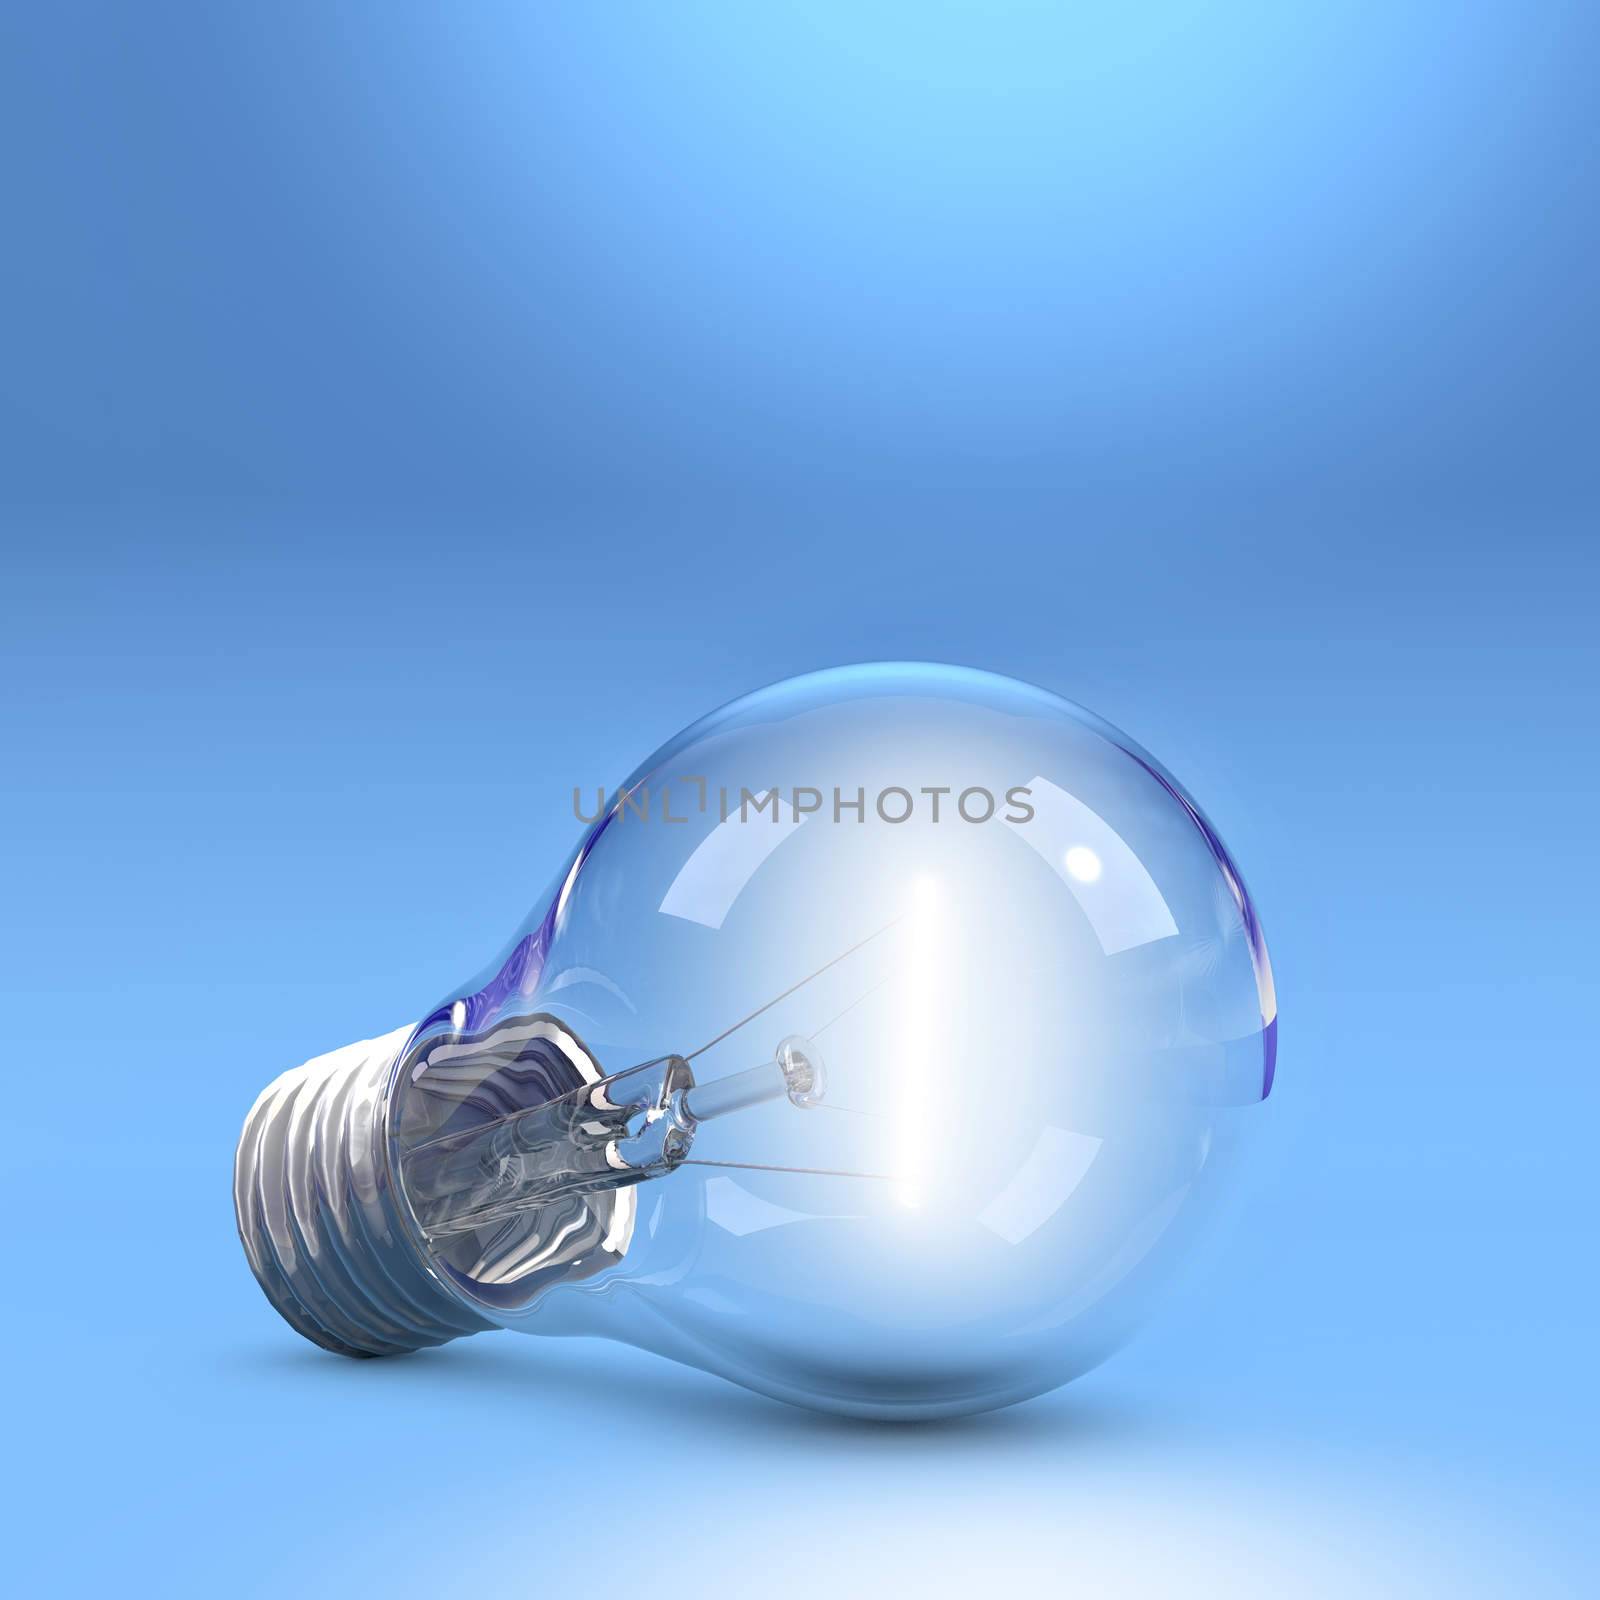 LightBulb on floor by dynamicfoto